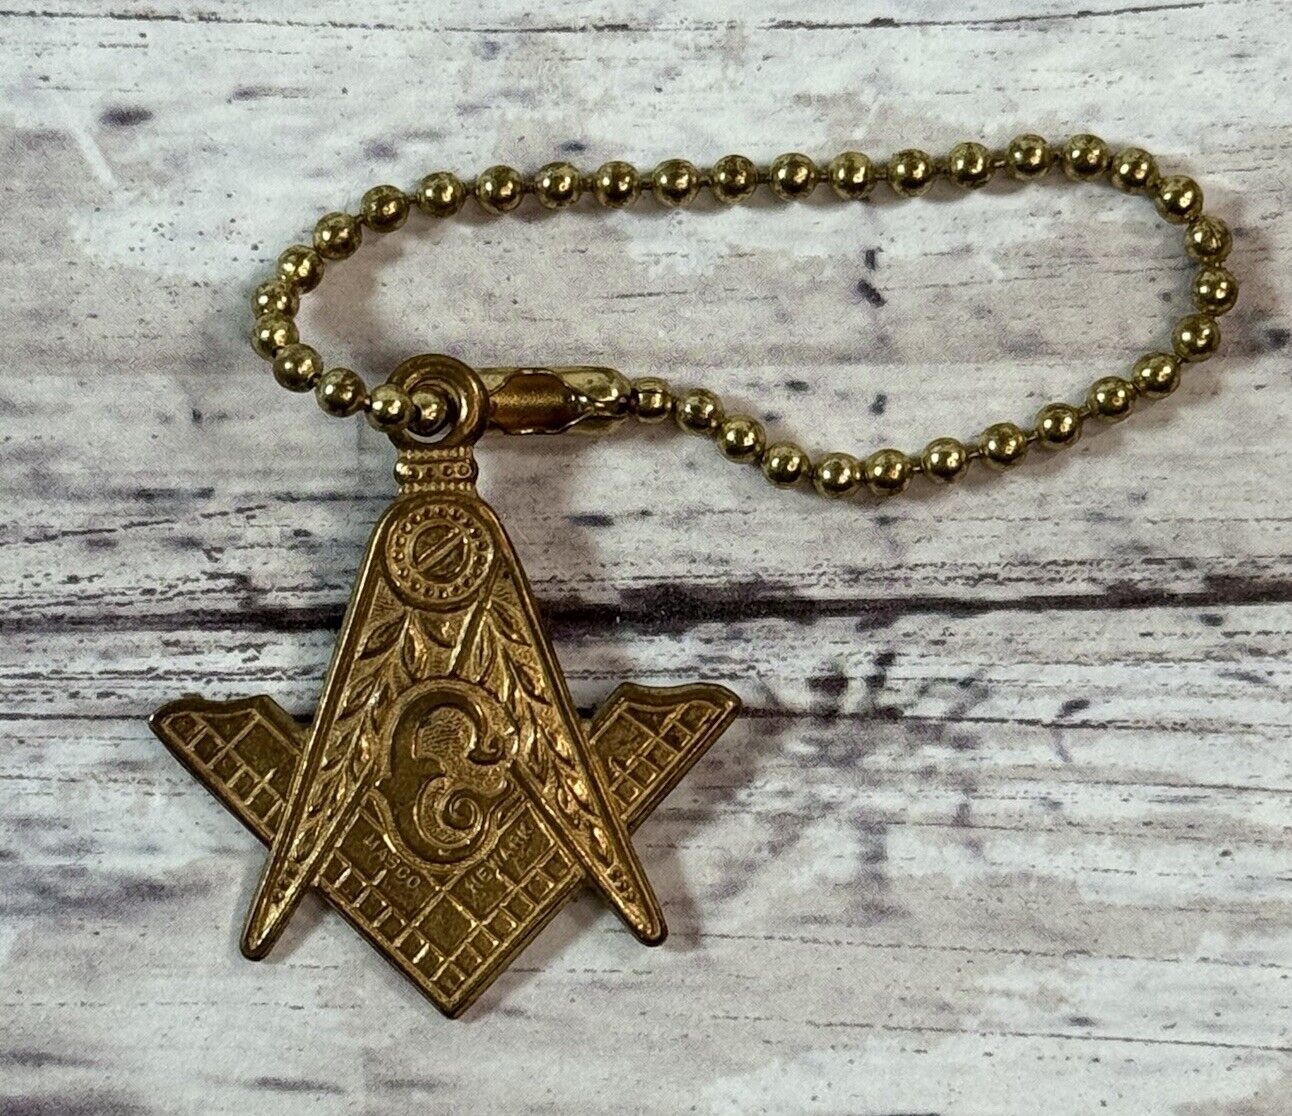 Vintage Freemason Masonic Keychain Pendant Charm Collectible Marked Masco Newark